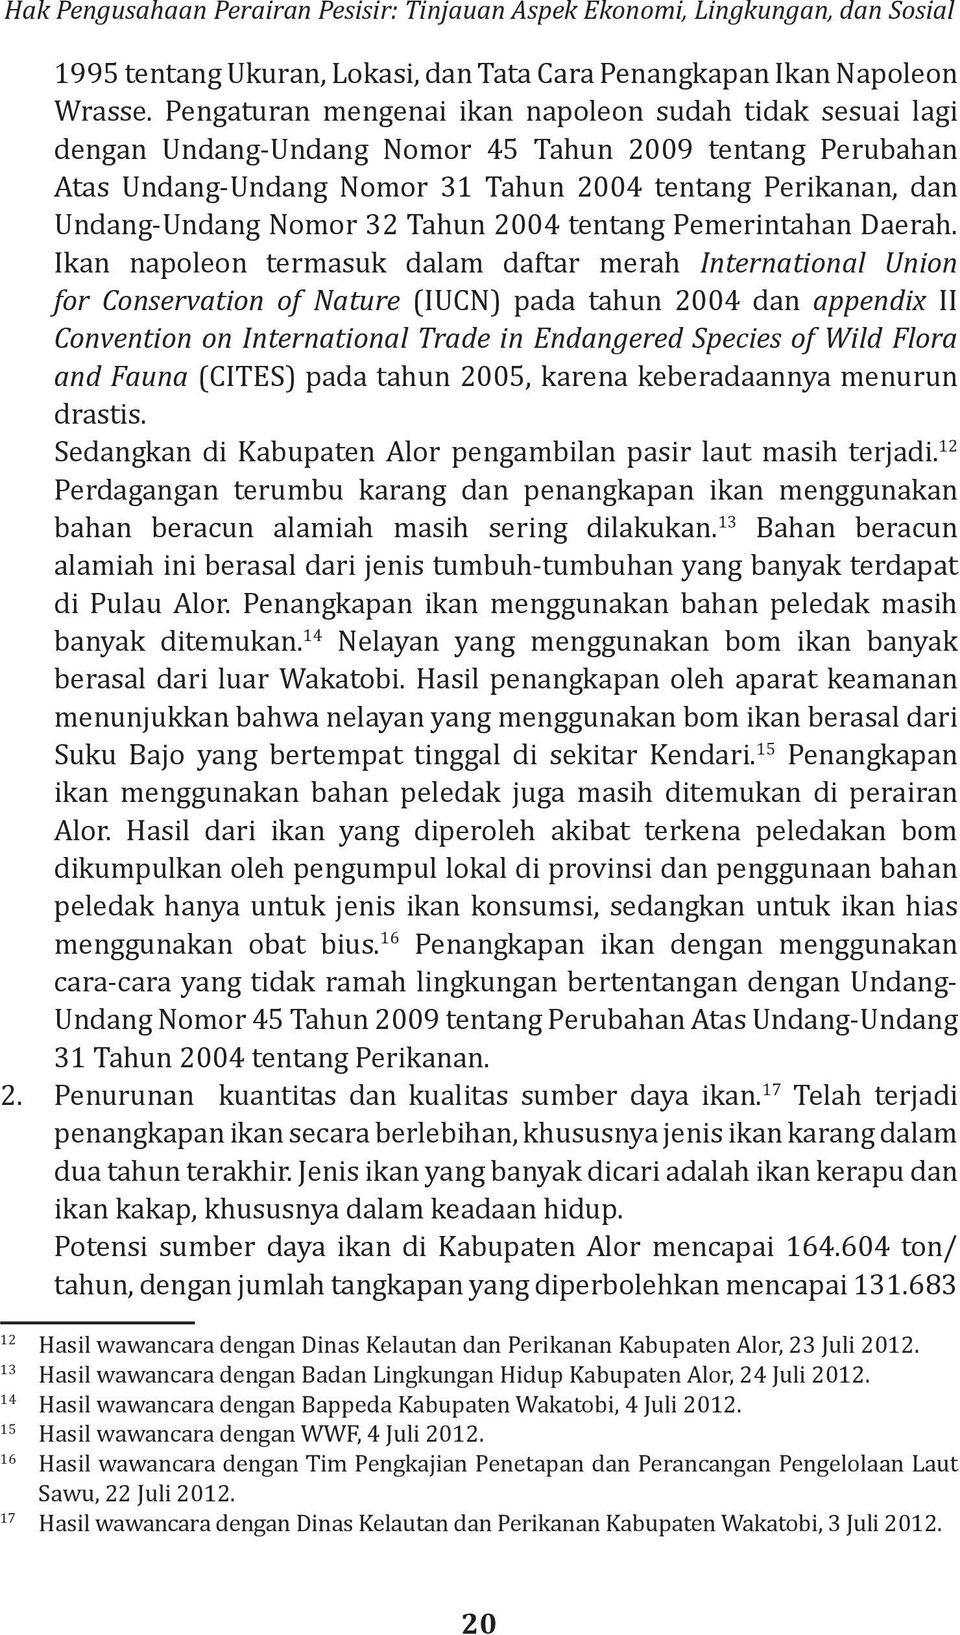 32 Tahun 2004 tentang Pemerintahan Daerah.